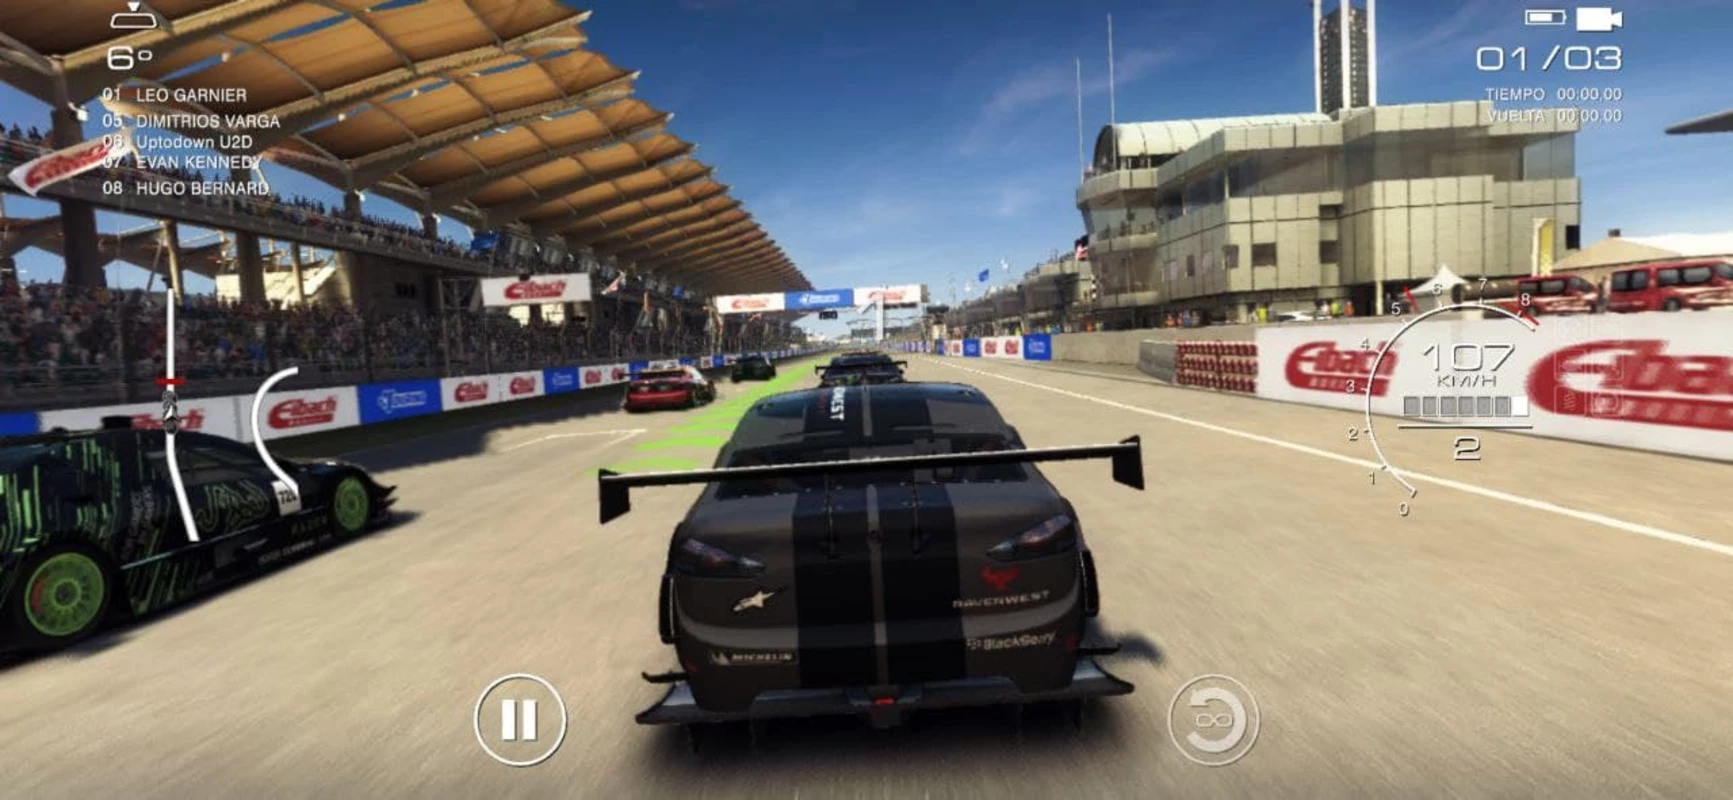 GRID™ Autosport Custom Edition APK Mod para Android ✔️ Descargar - El  Sótano de Alicia【Web】